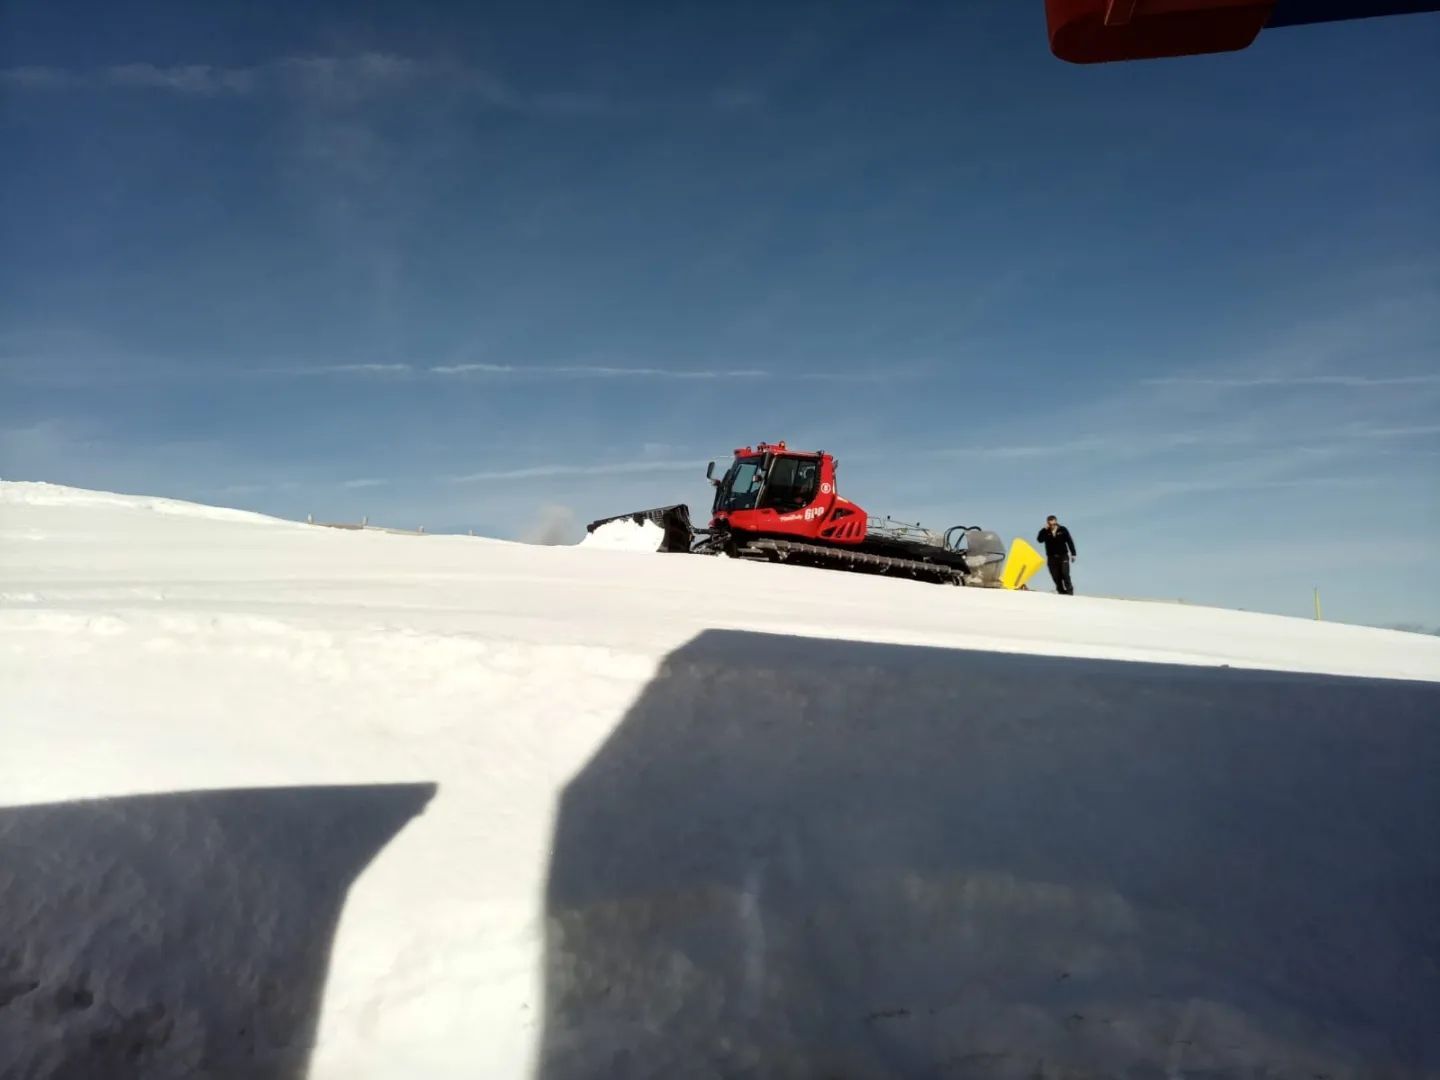 Valgrande-Pajares cierra su temporada de esquí pero mantiene abierto el telecabina